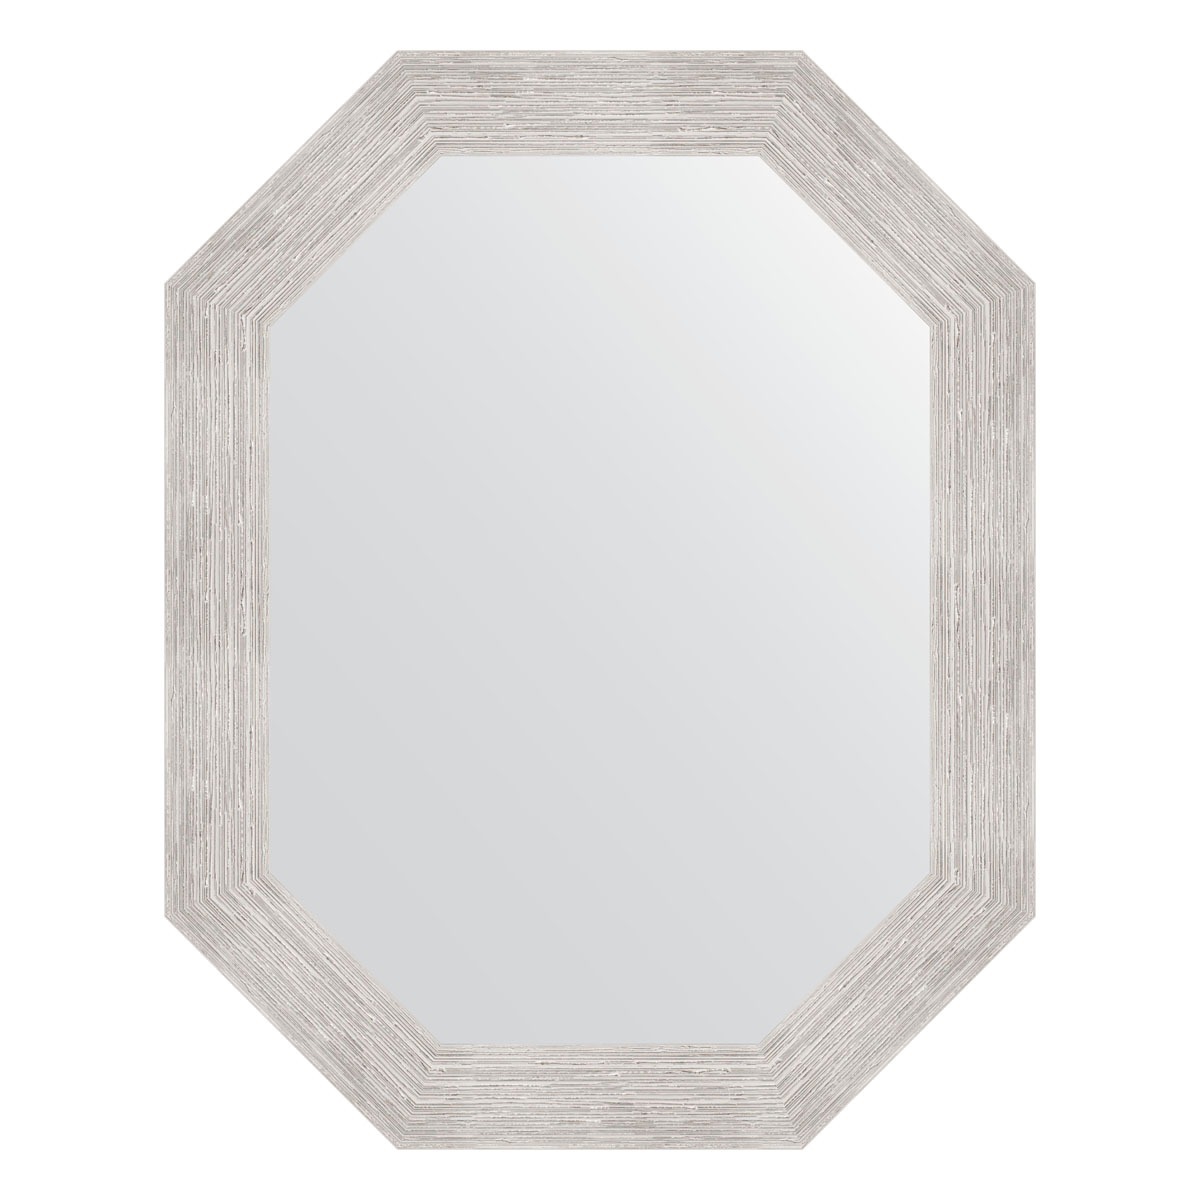 Зеркало в багетной раме Evoform серебряный дождь 70 мм 57x72 см зеркало в багетной раме evoform чеканка белая 70 мм 57x72 см